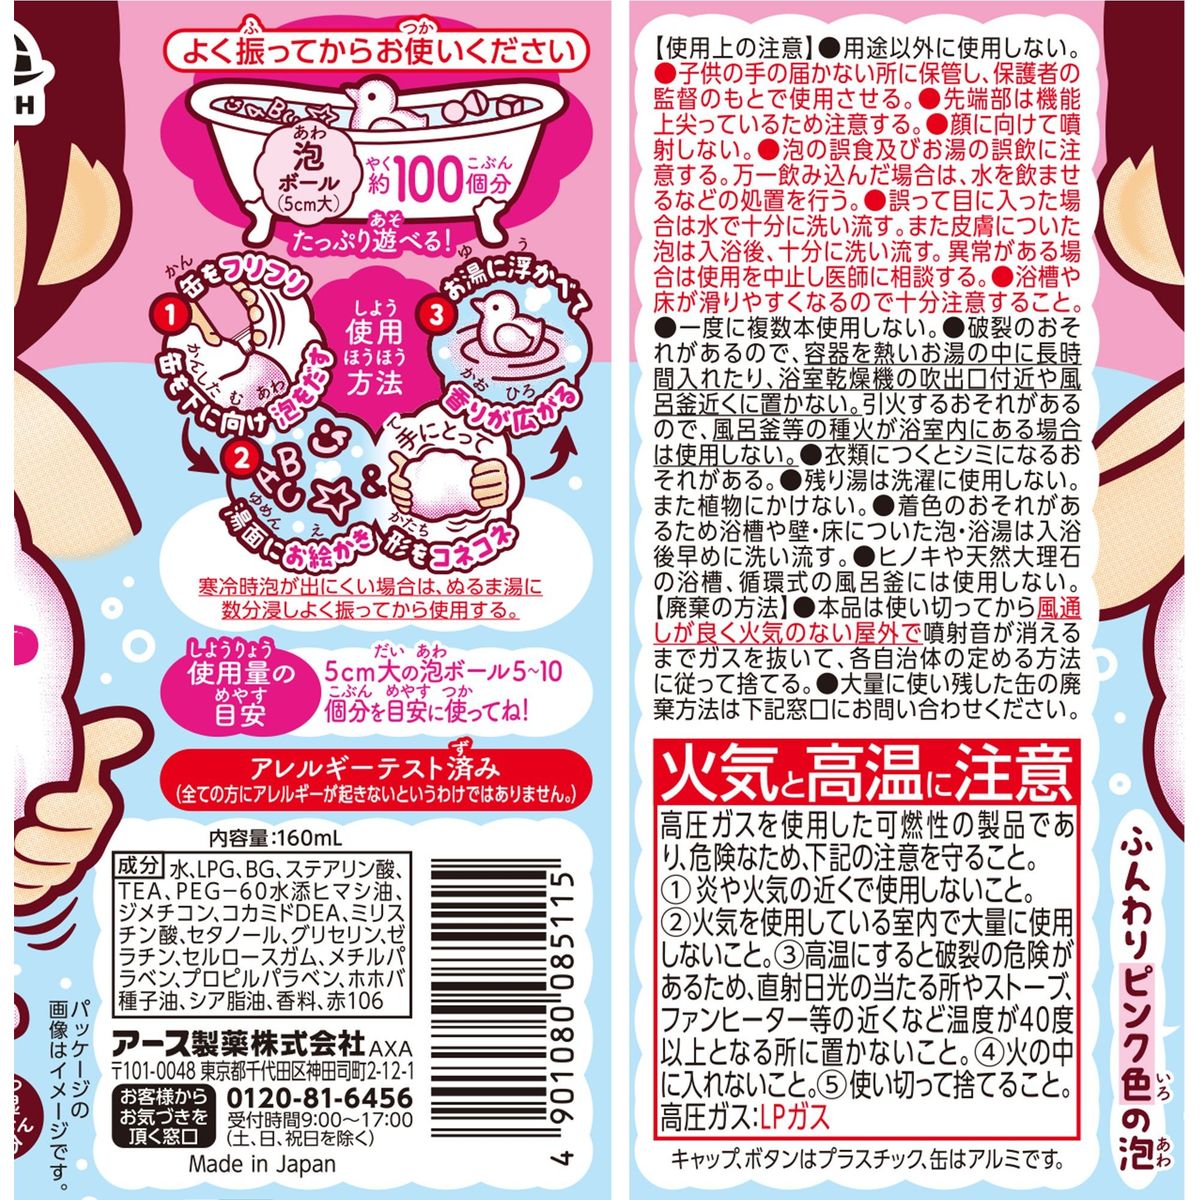 遊べる入浴 あわっぴー イチゴの香り 入浴剤×20本